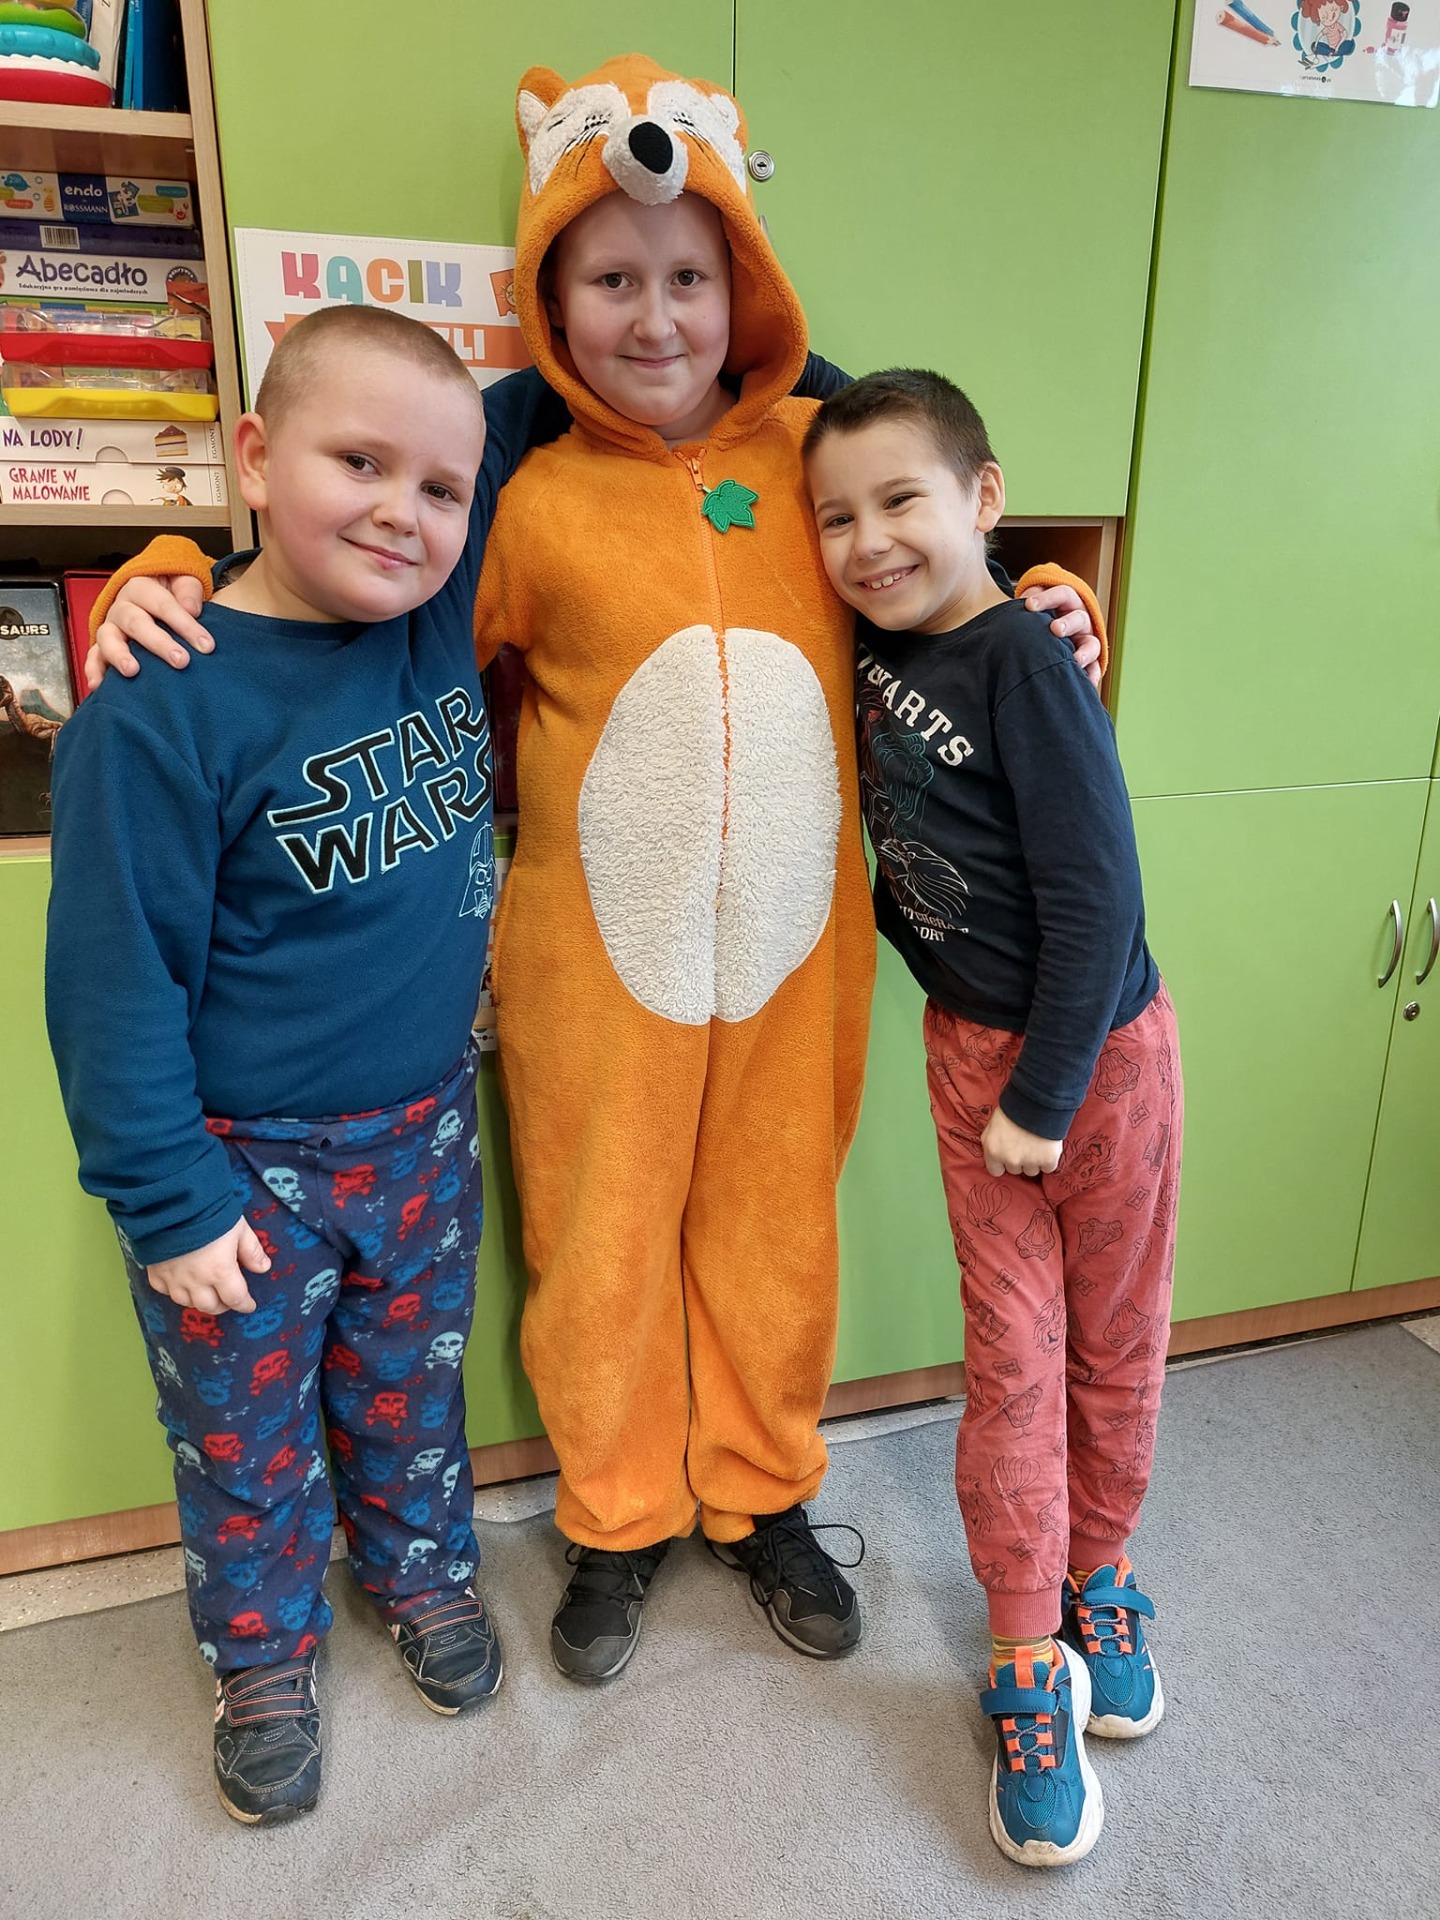 3 małych chłopców stoi w piżamach, chłopiec w środku ma piżamę -kombinezon w kolorze pomaranczowym (lis)